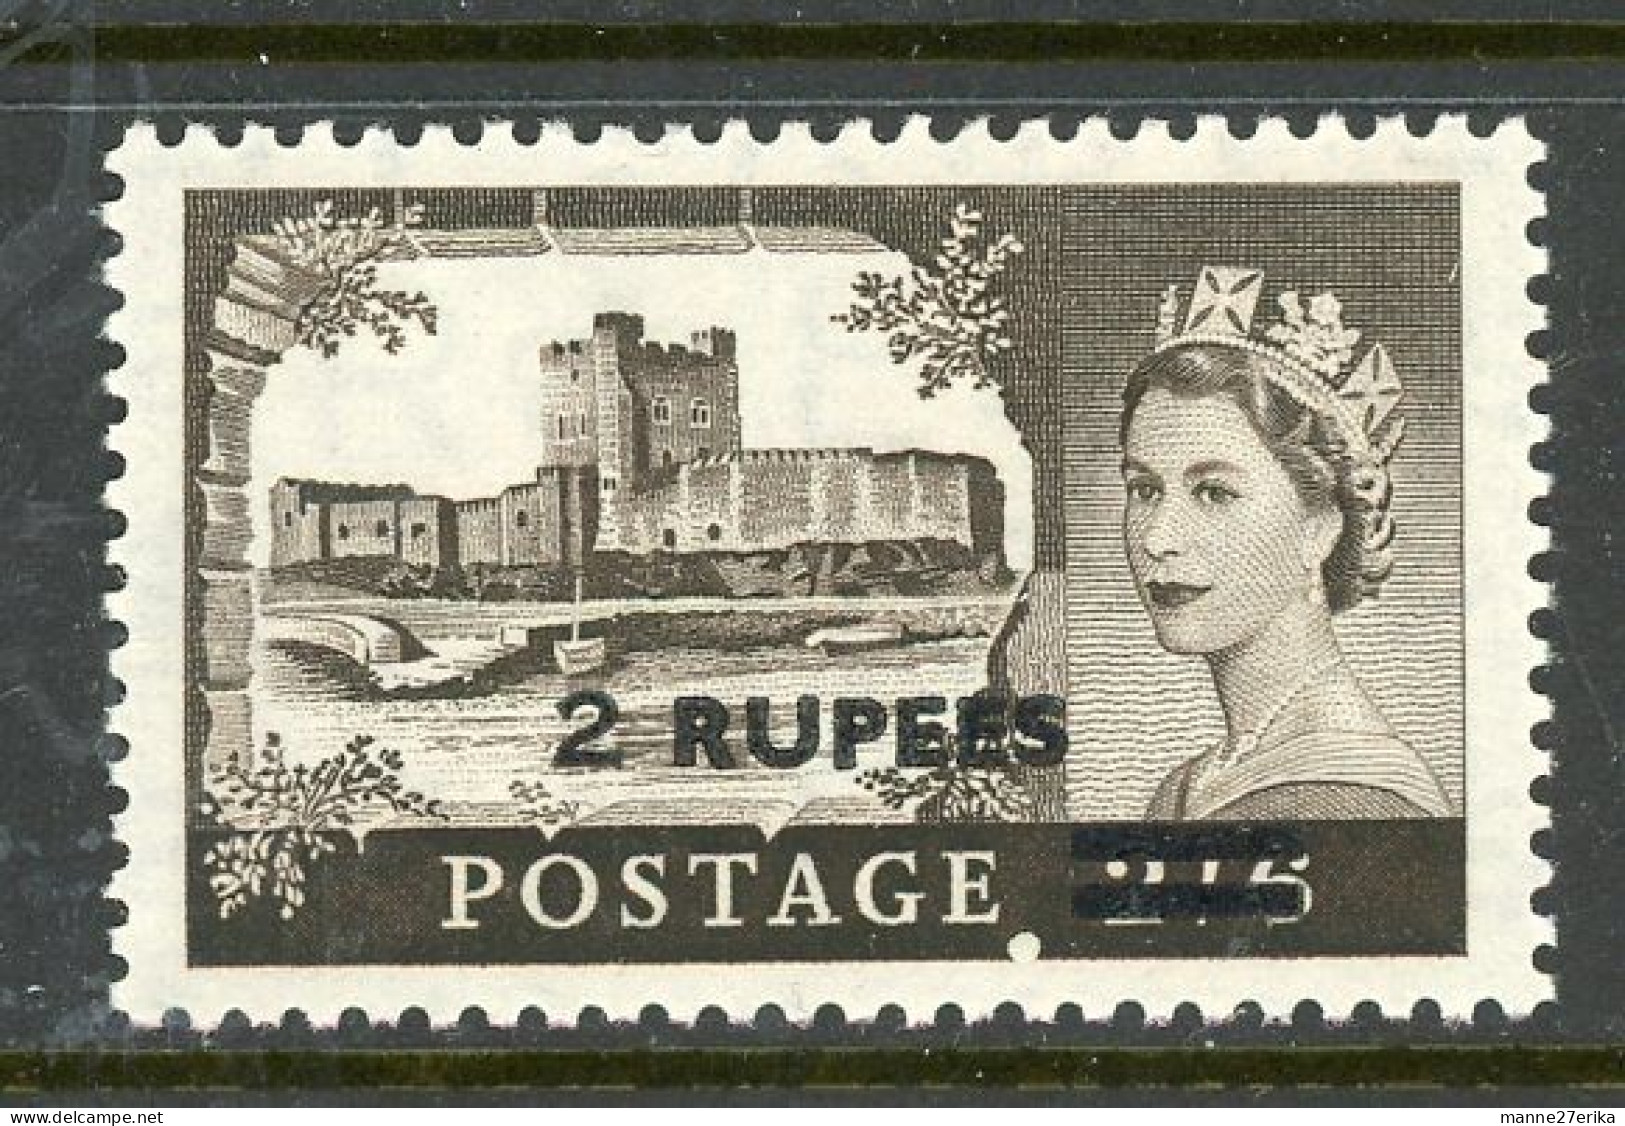 Great Britain (Oman) MH 1955 - Service